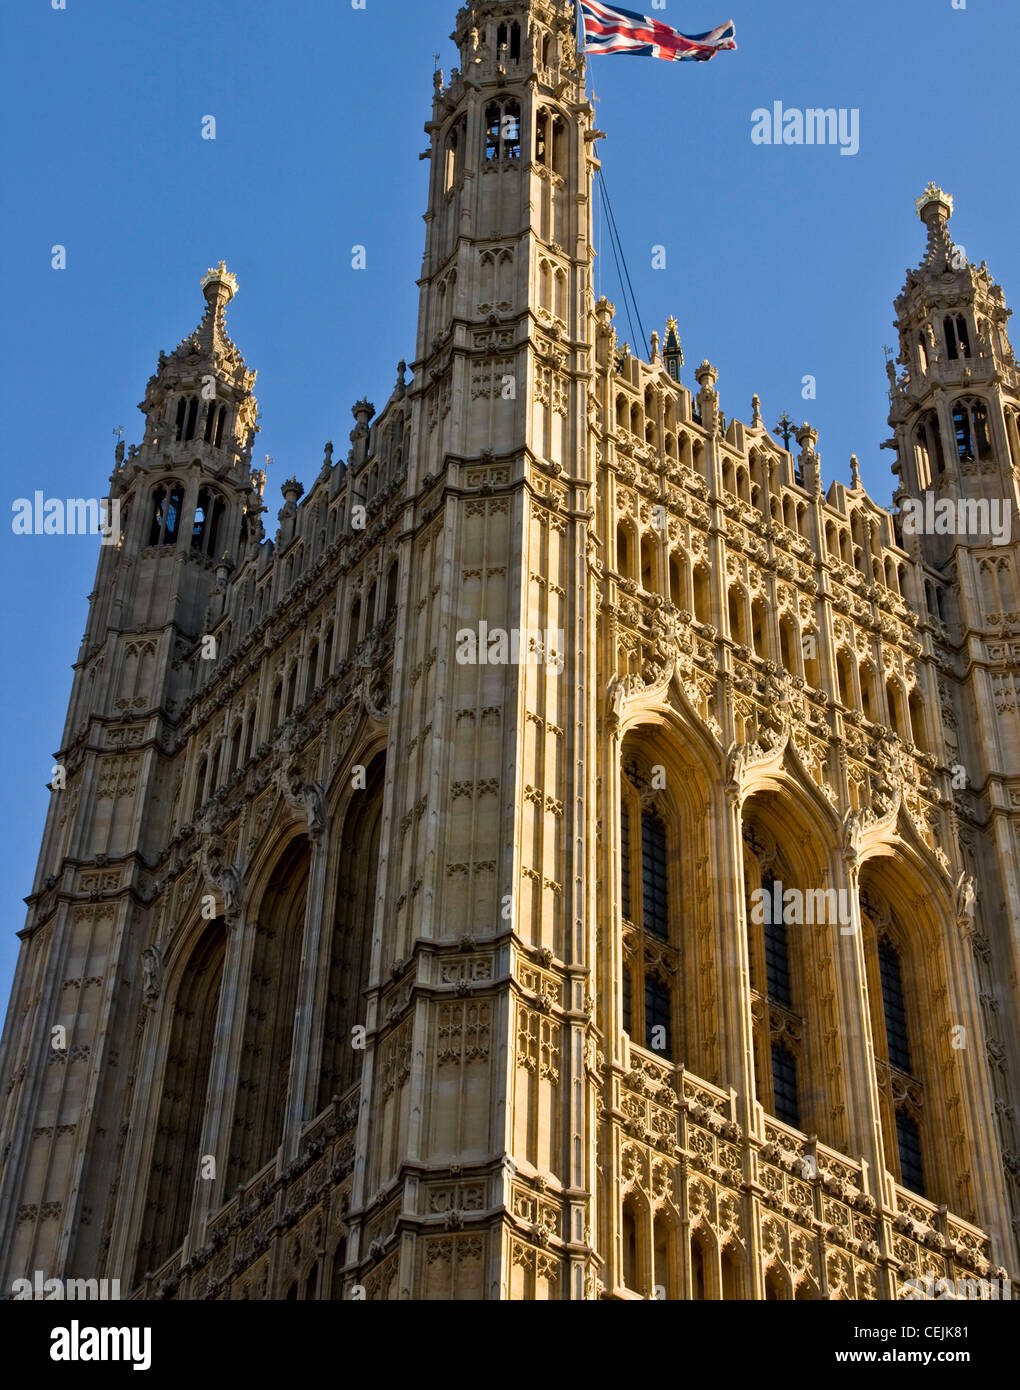 Bandera Union Jack Victoria casas torre del Parlamento listado como grado 1, sitio de patrimonio mundial de la UNESCO Londres Inglaterra Europa Foto de stock